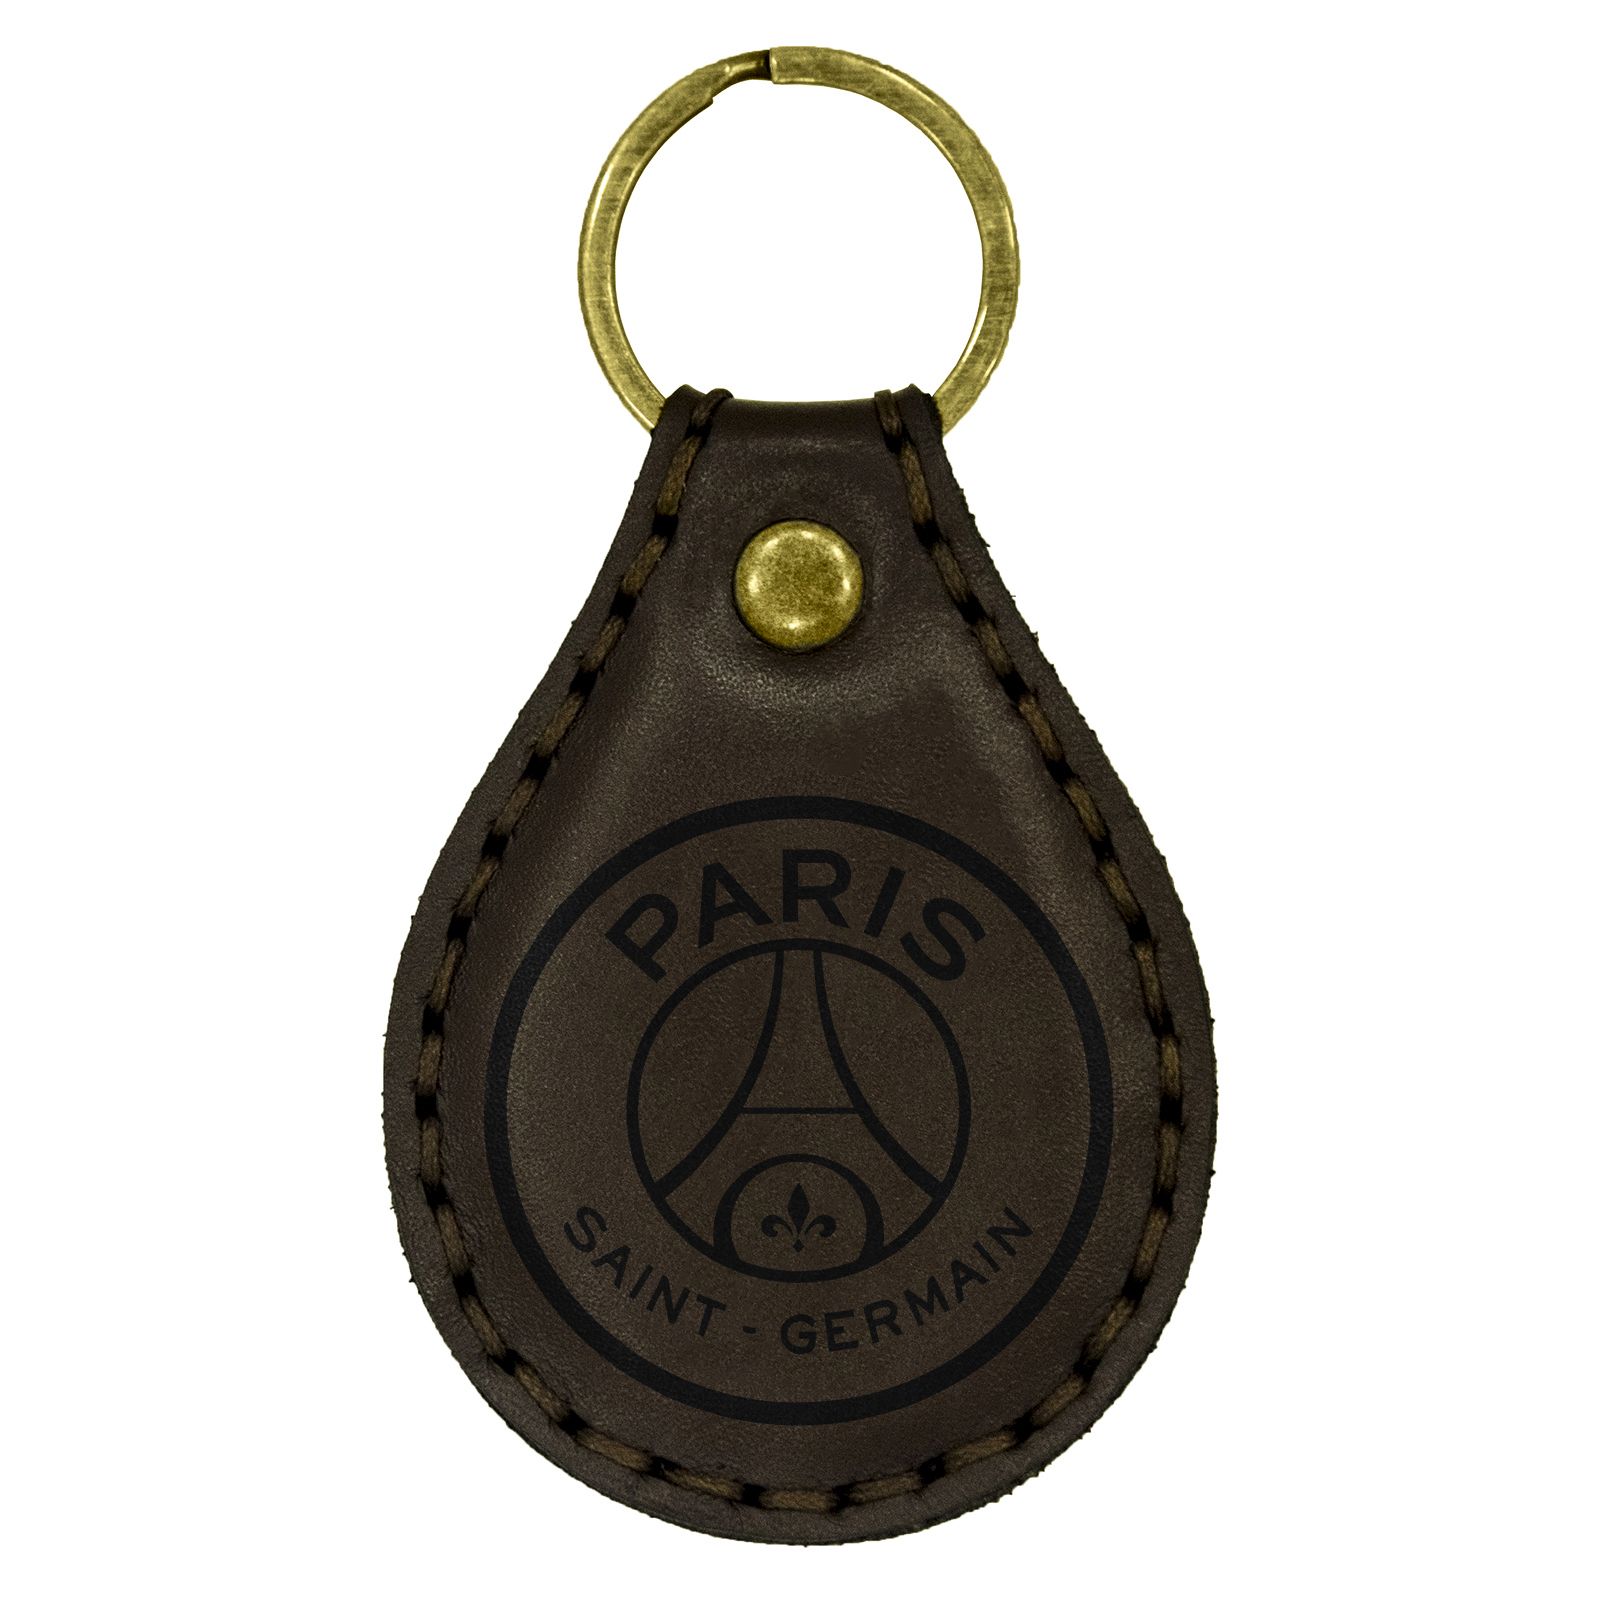 جاکلیدی چرمینه اسپرت طرح پاریس سنت ژرمن کد 18003 -  - 1